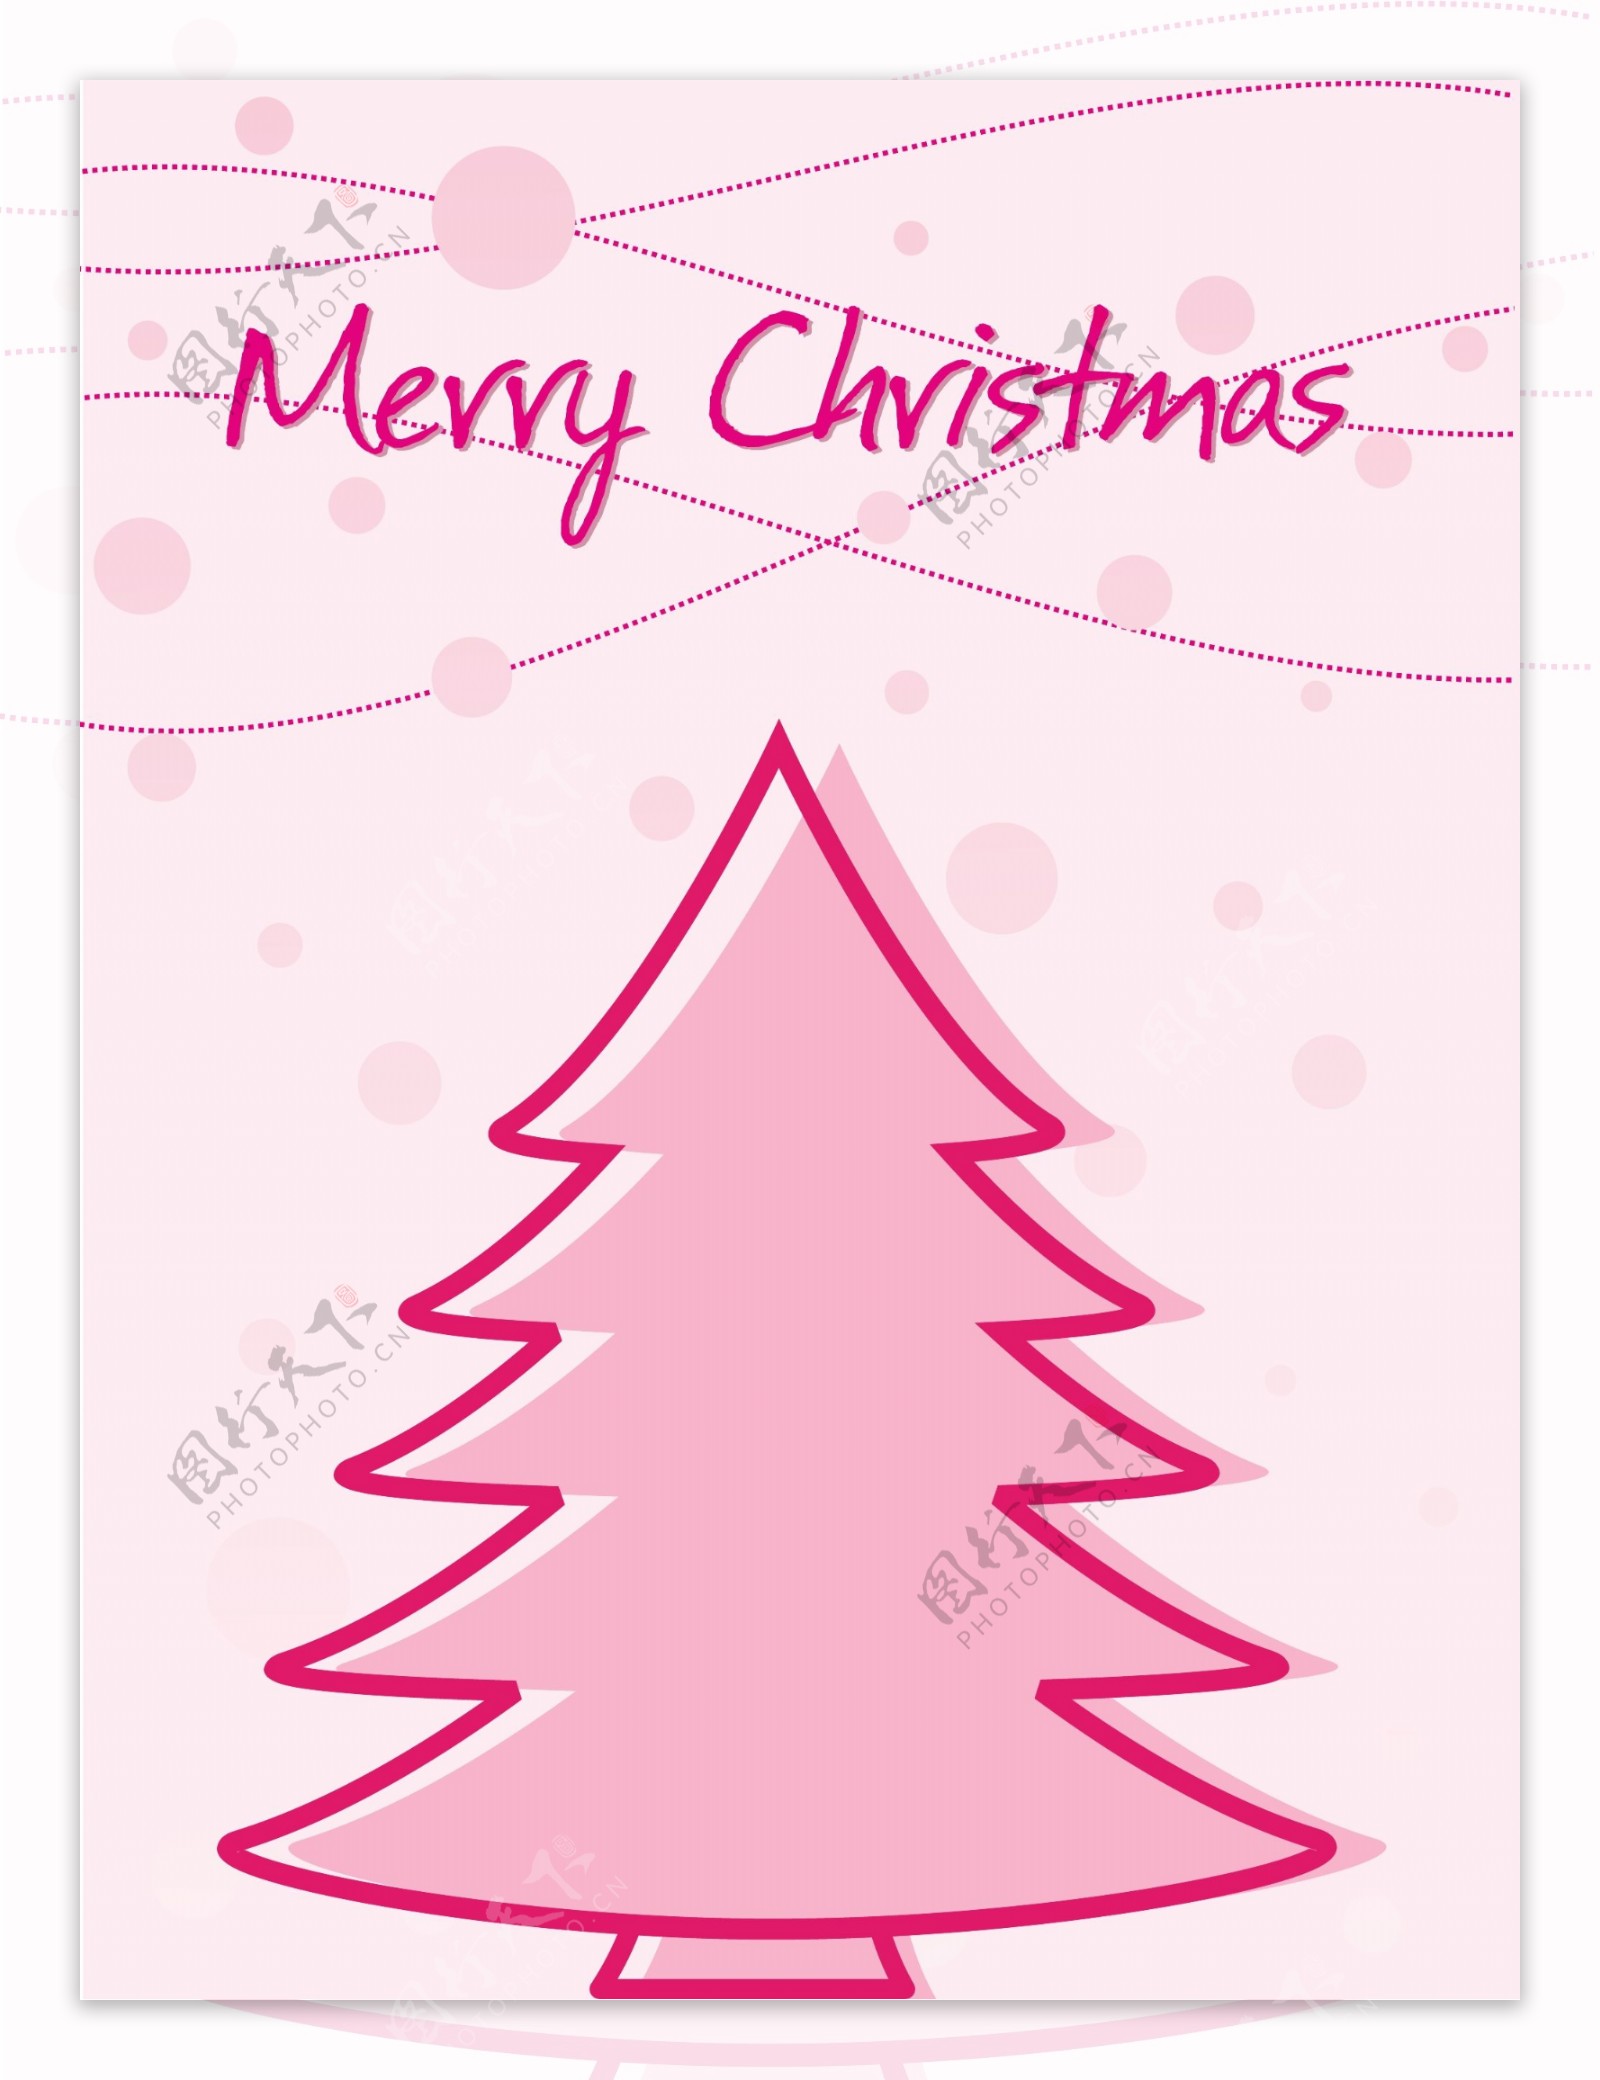 粉红色背景与圣诞树和雪